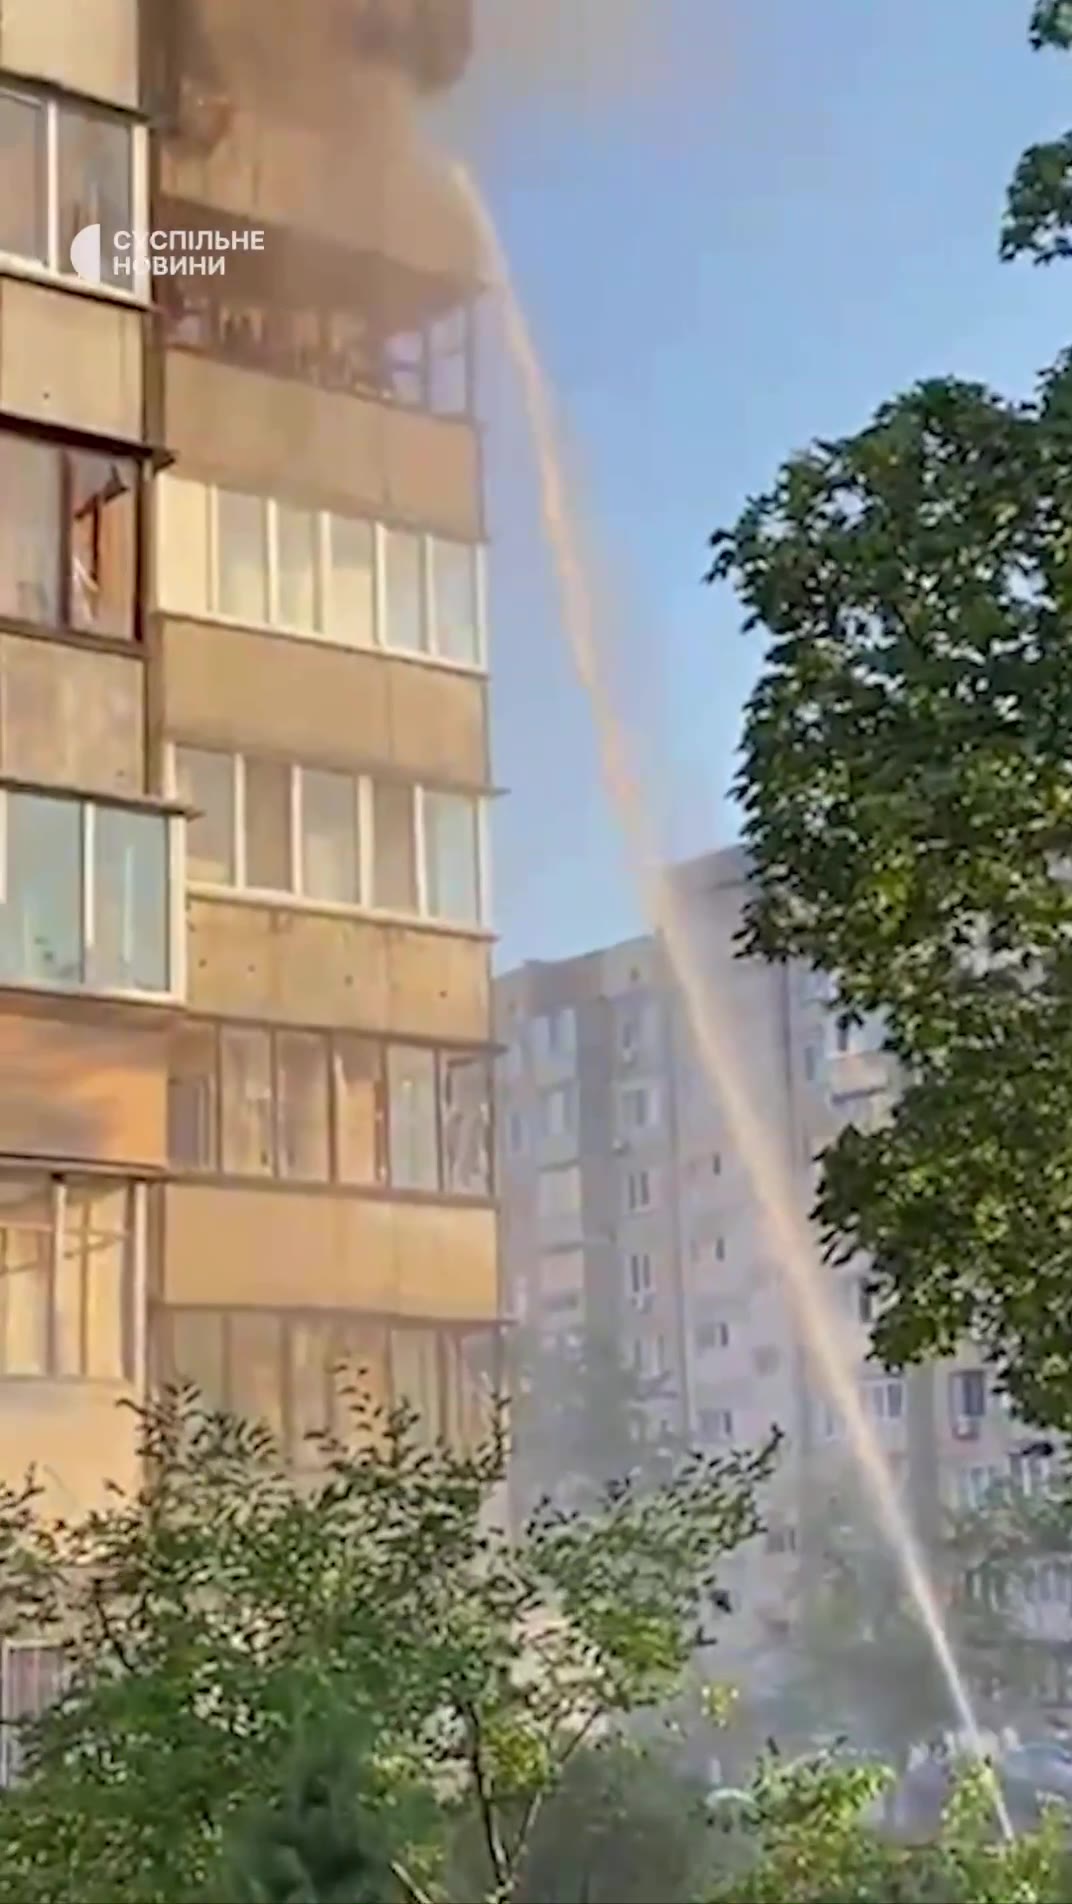 Kyiv'in Obolonsky semtindeki Rus füze saldırısı sonucu konut binası hasar gördü